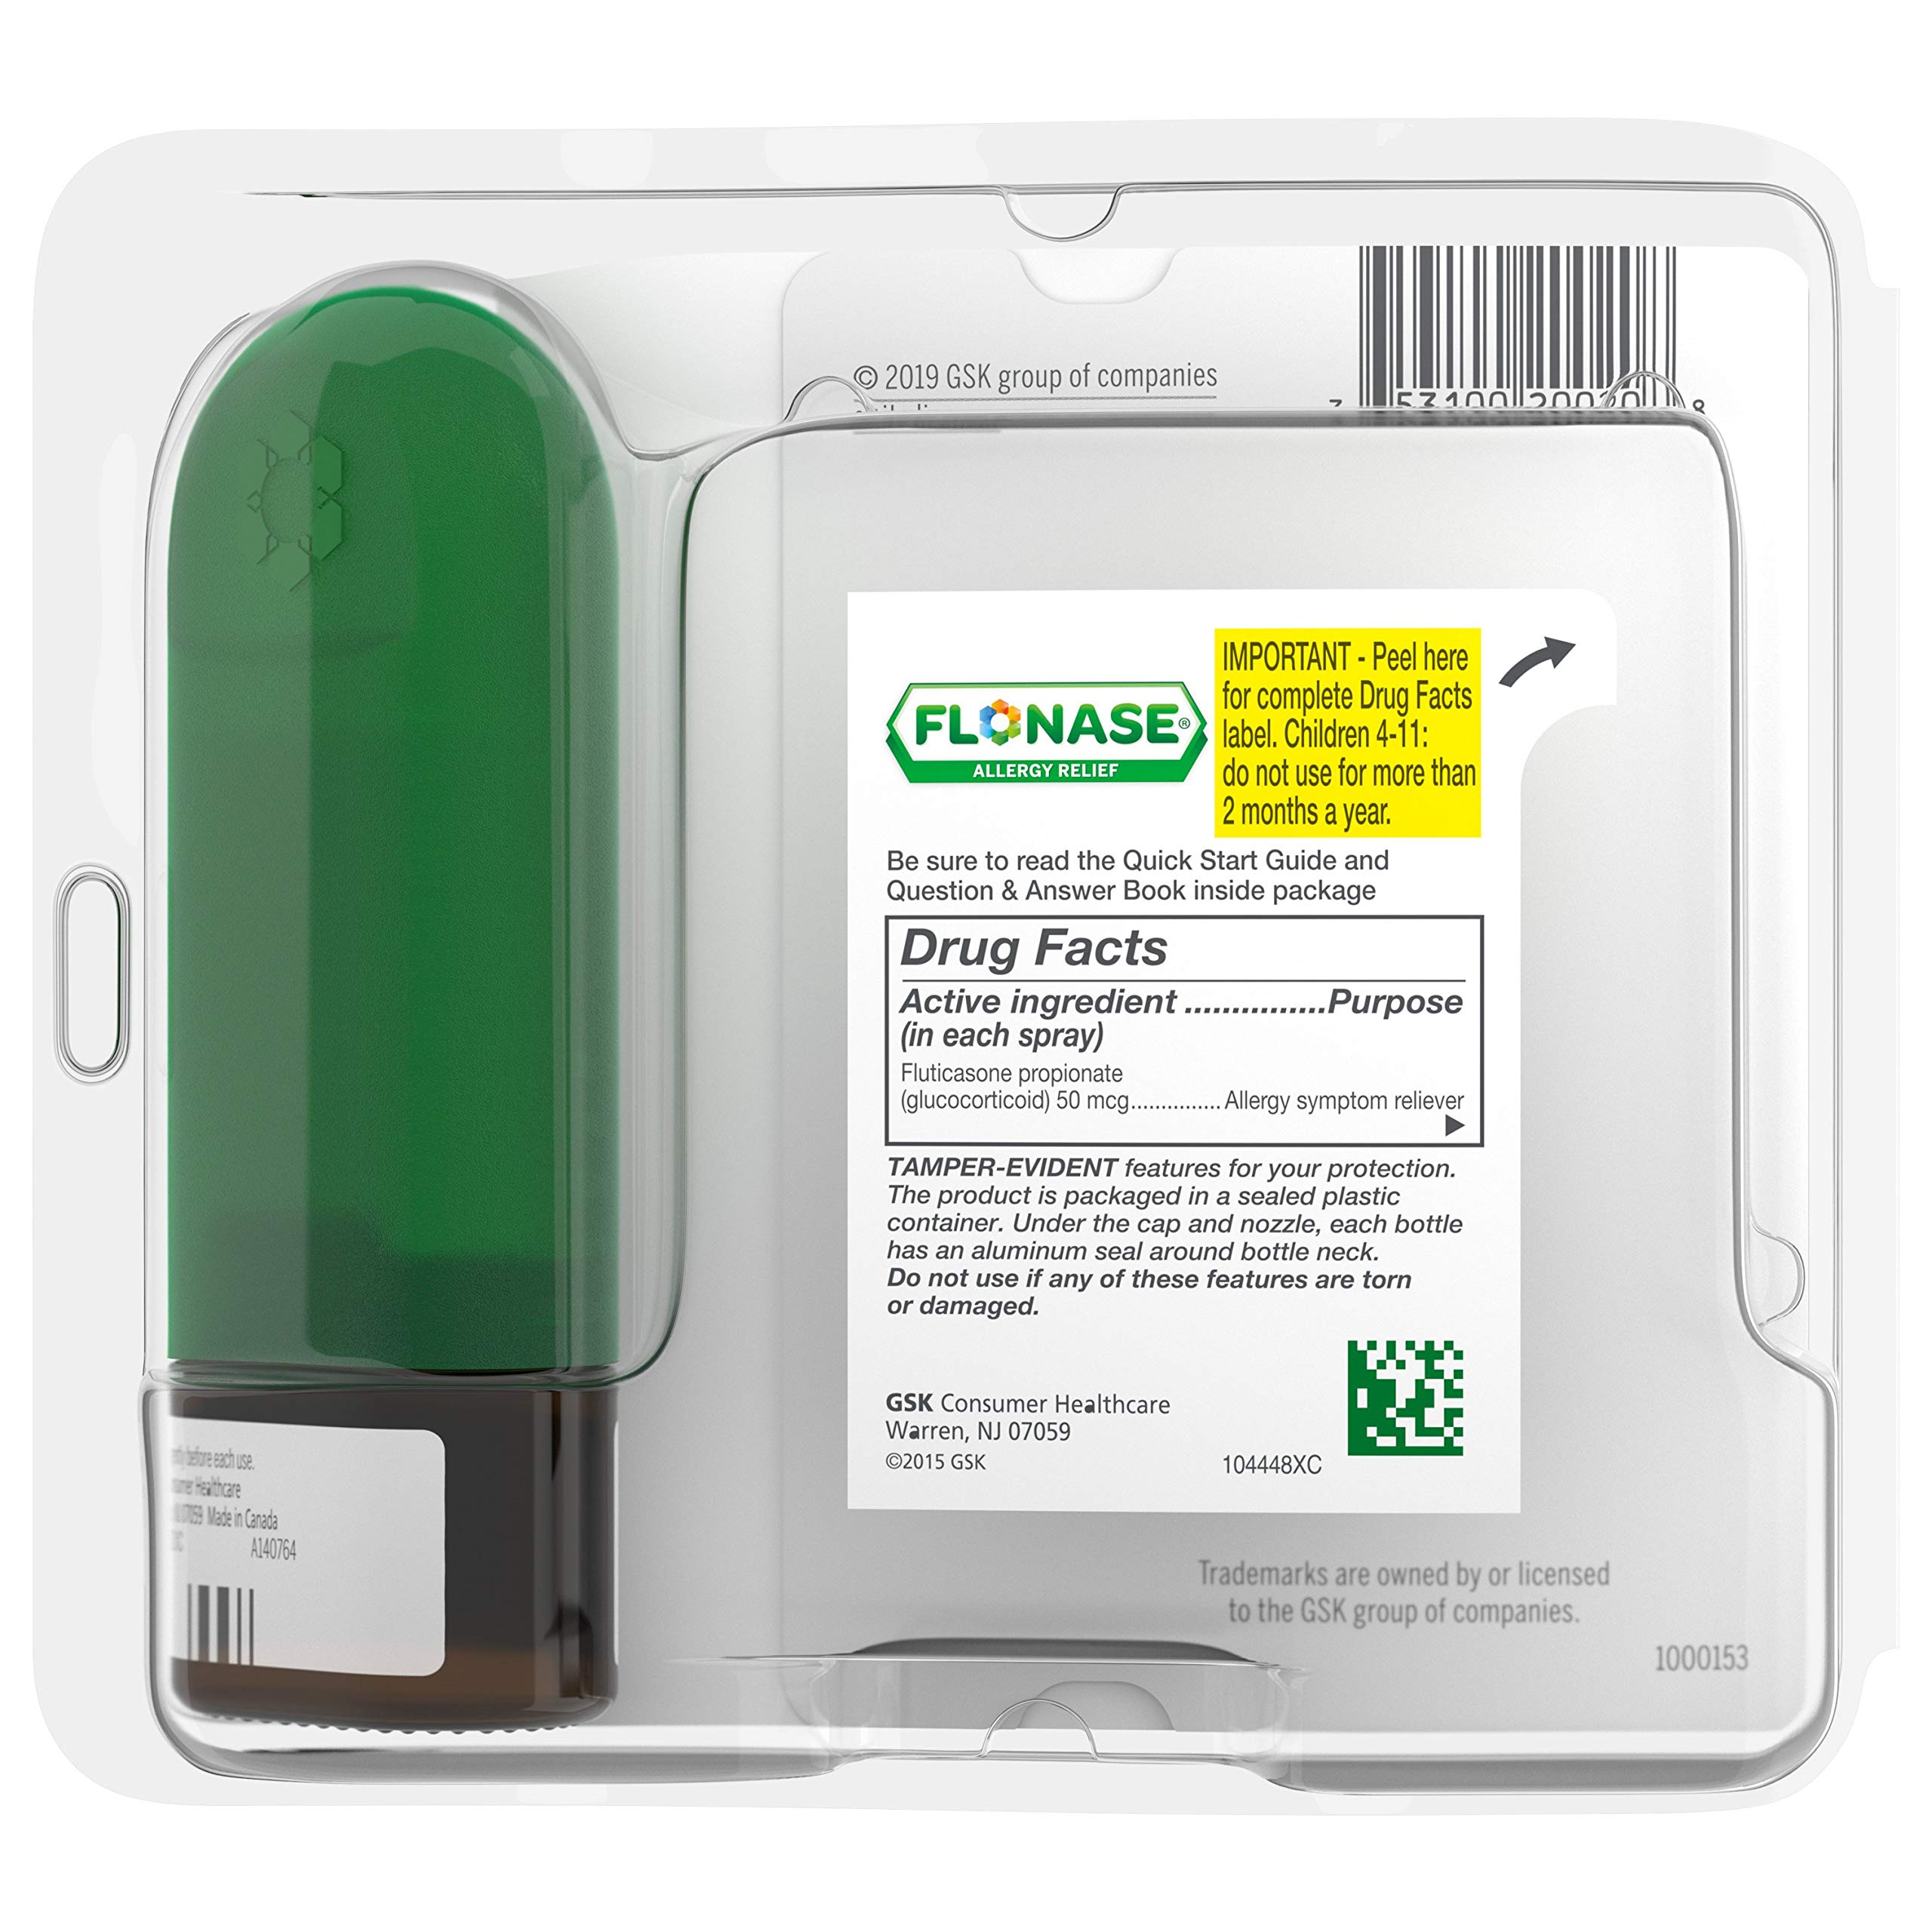 Flonase Allergy Relief Nasal Spray, 24 Hour Non Drowsy Allergy Medicine, Metered Nasal Spray - 120 Sprays, 0.54 Fl Oz (Pack of 1)